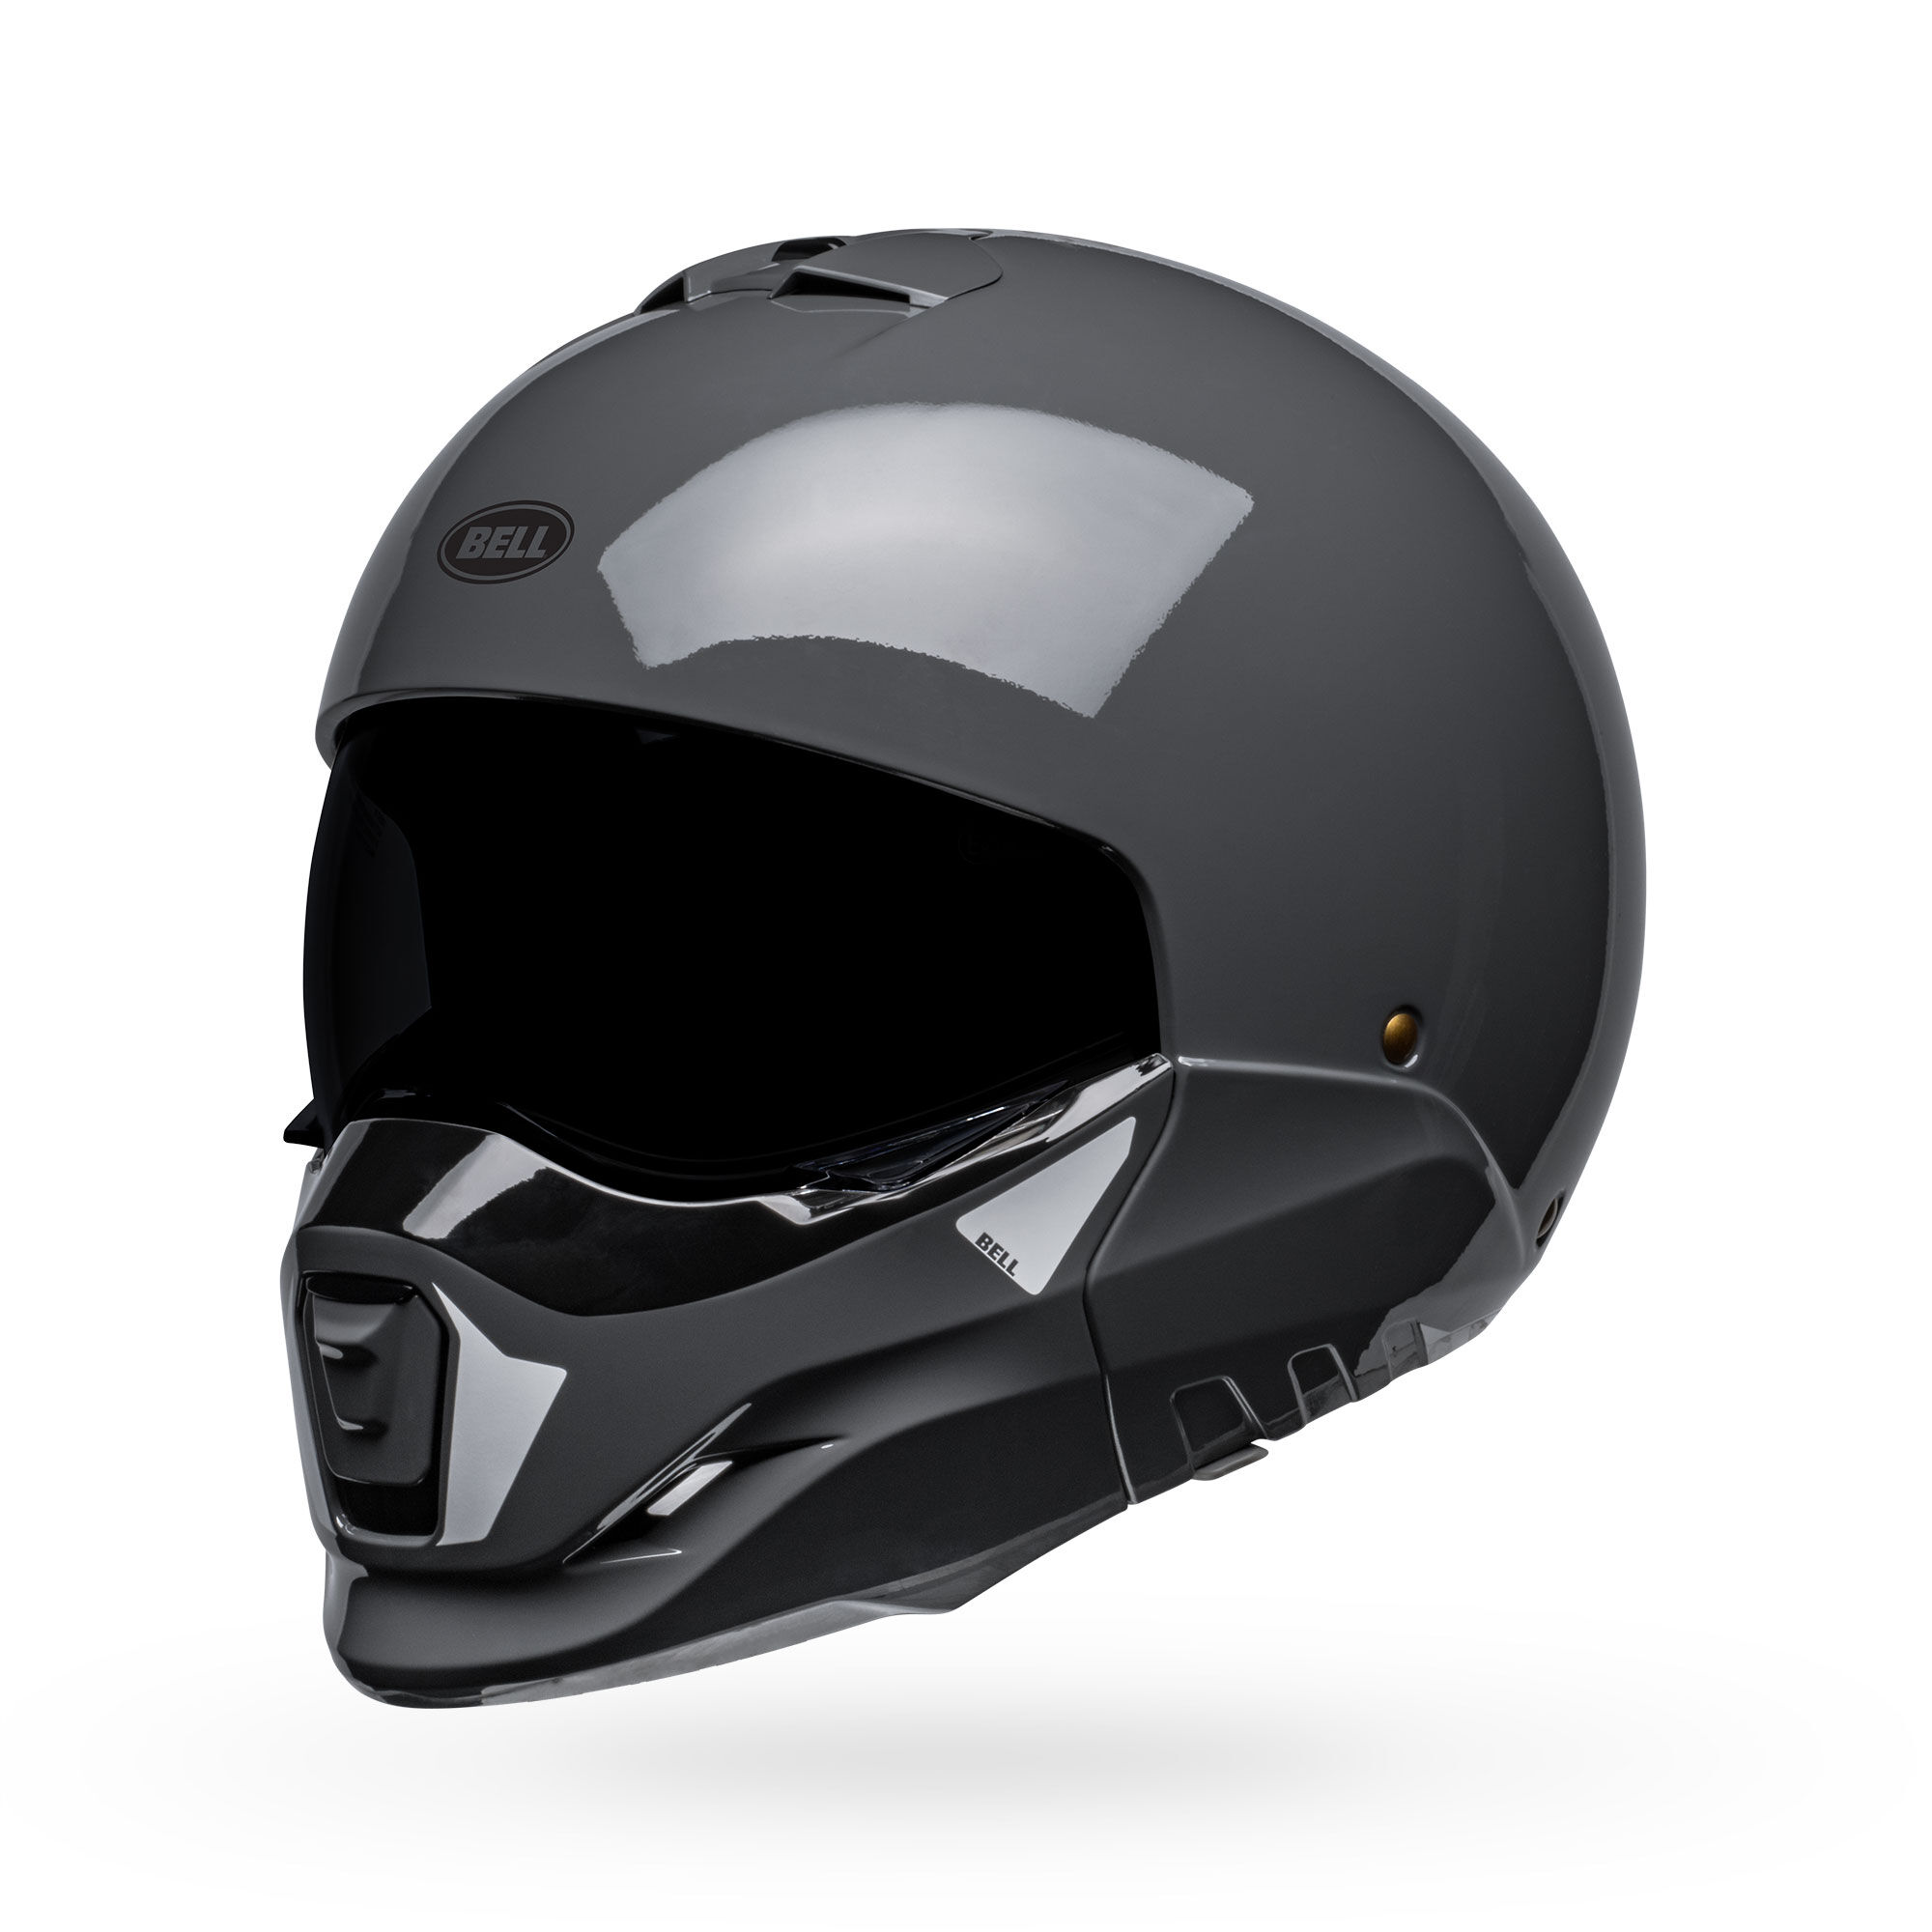 新製品情報も満載 BELL ヘルメット Broozer 2020年 モデル Lサイズ